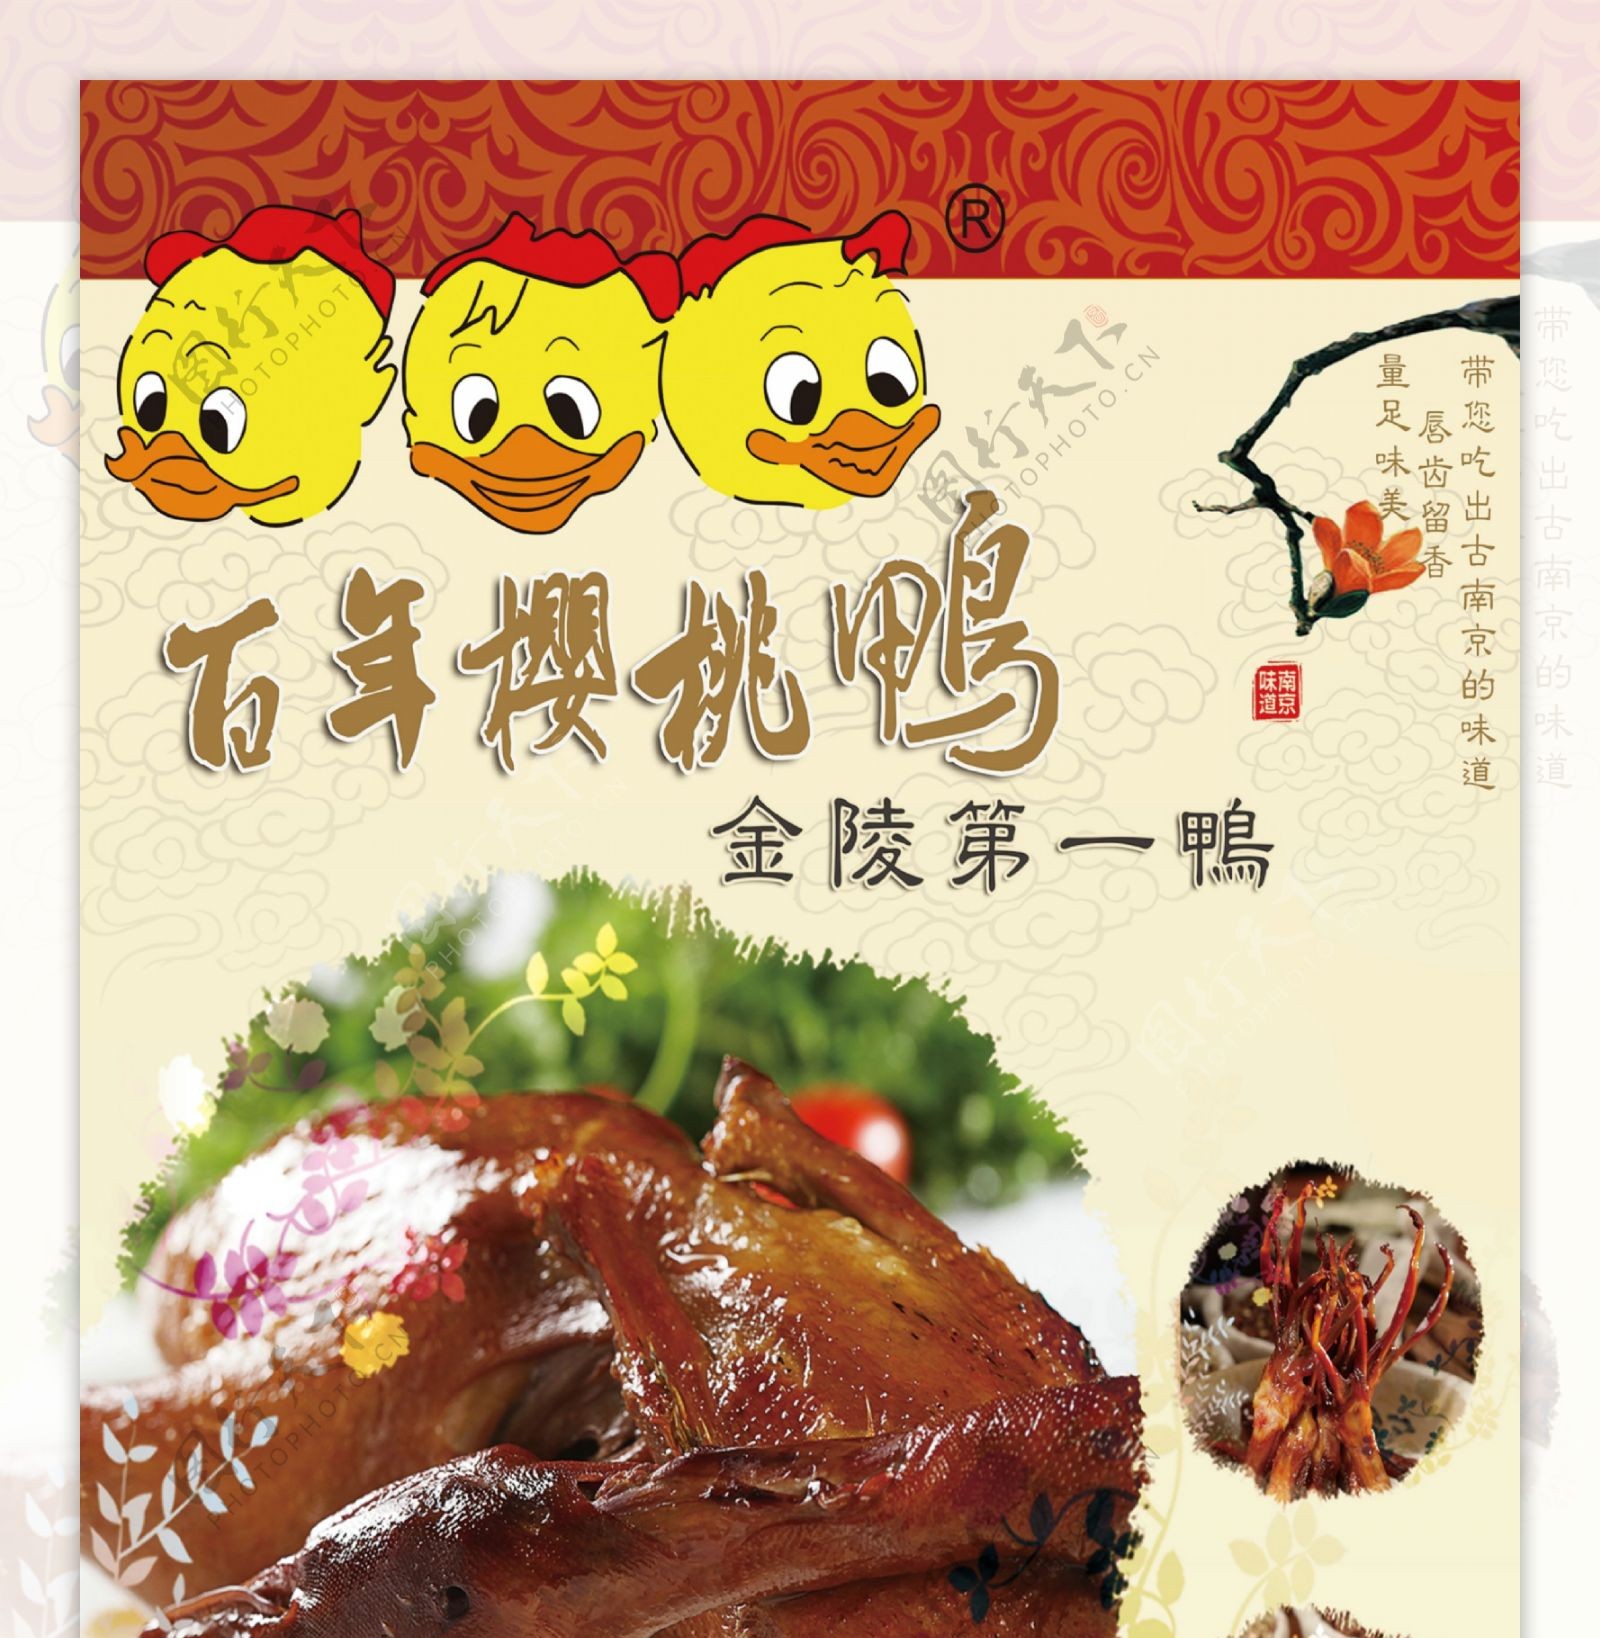 南京咸水鸭酱鸭海报图片